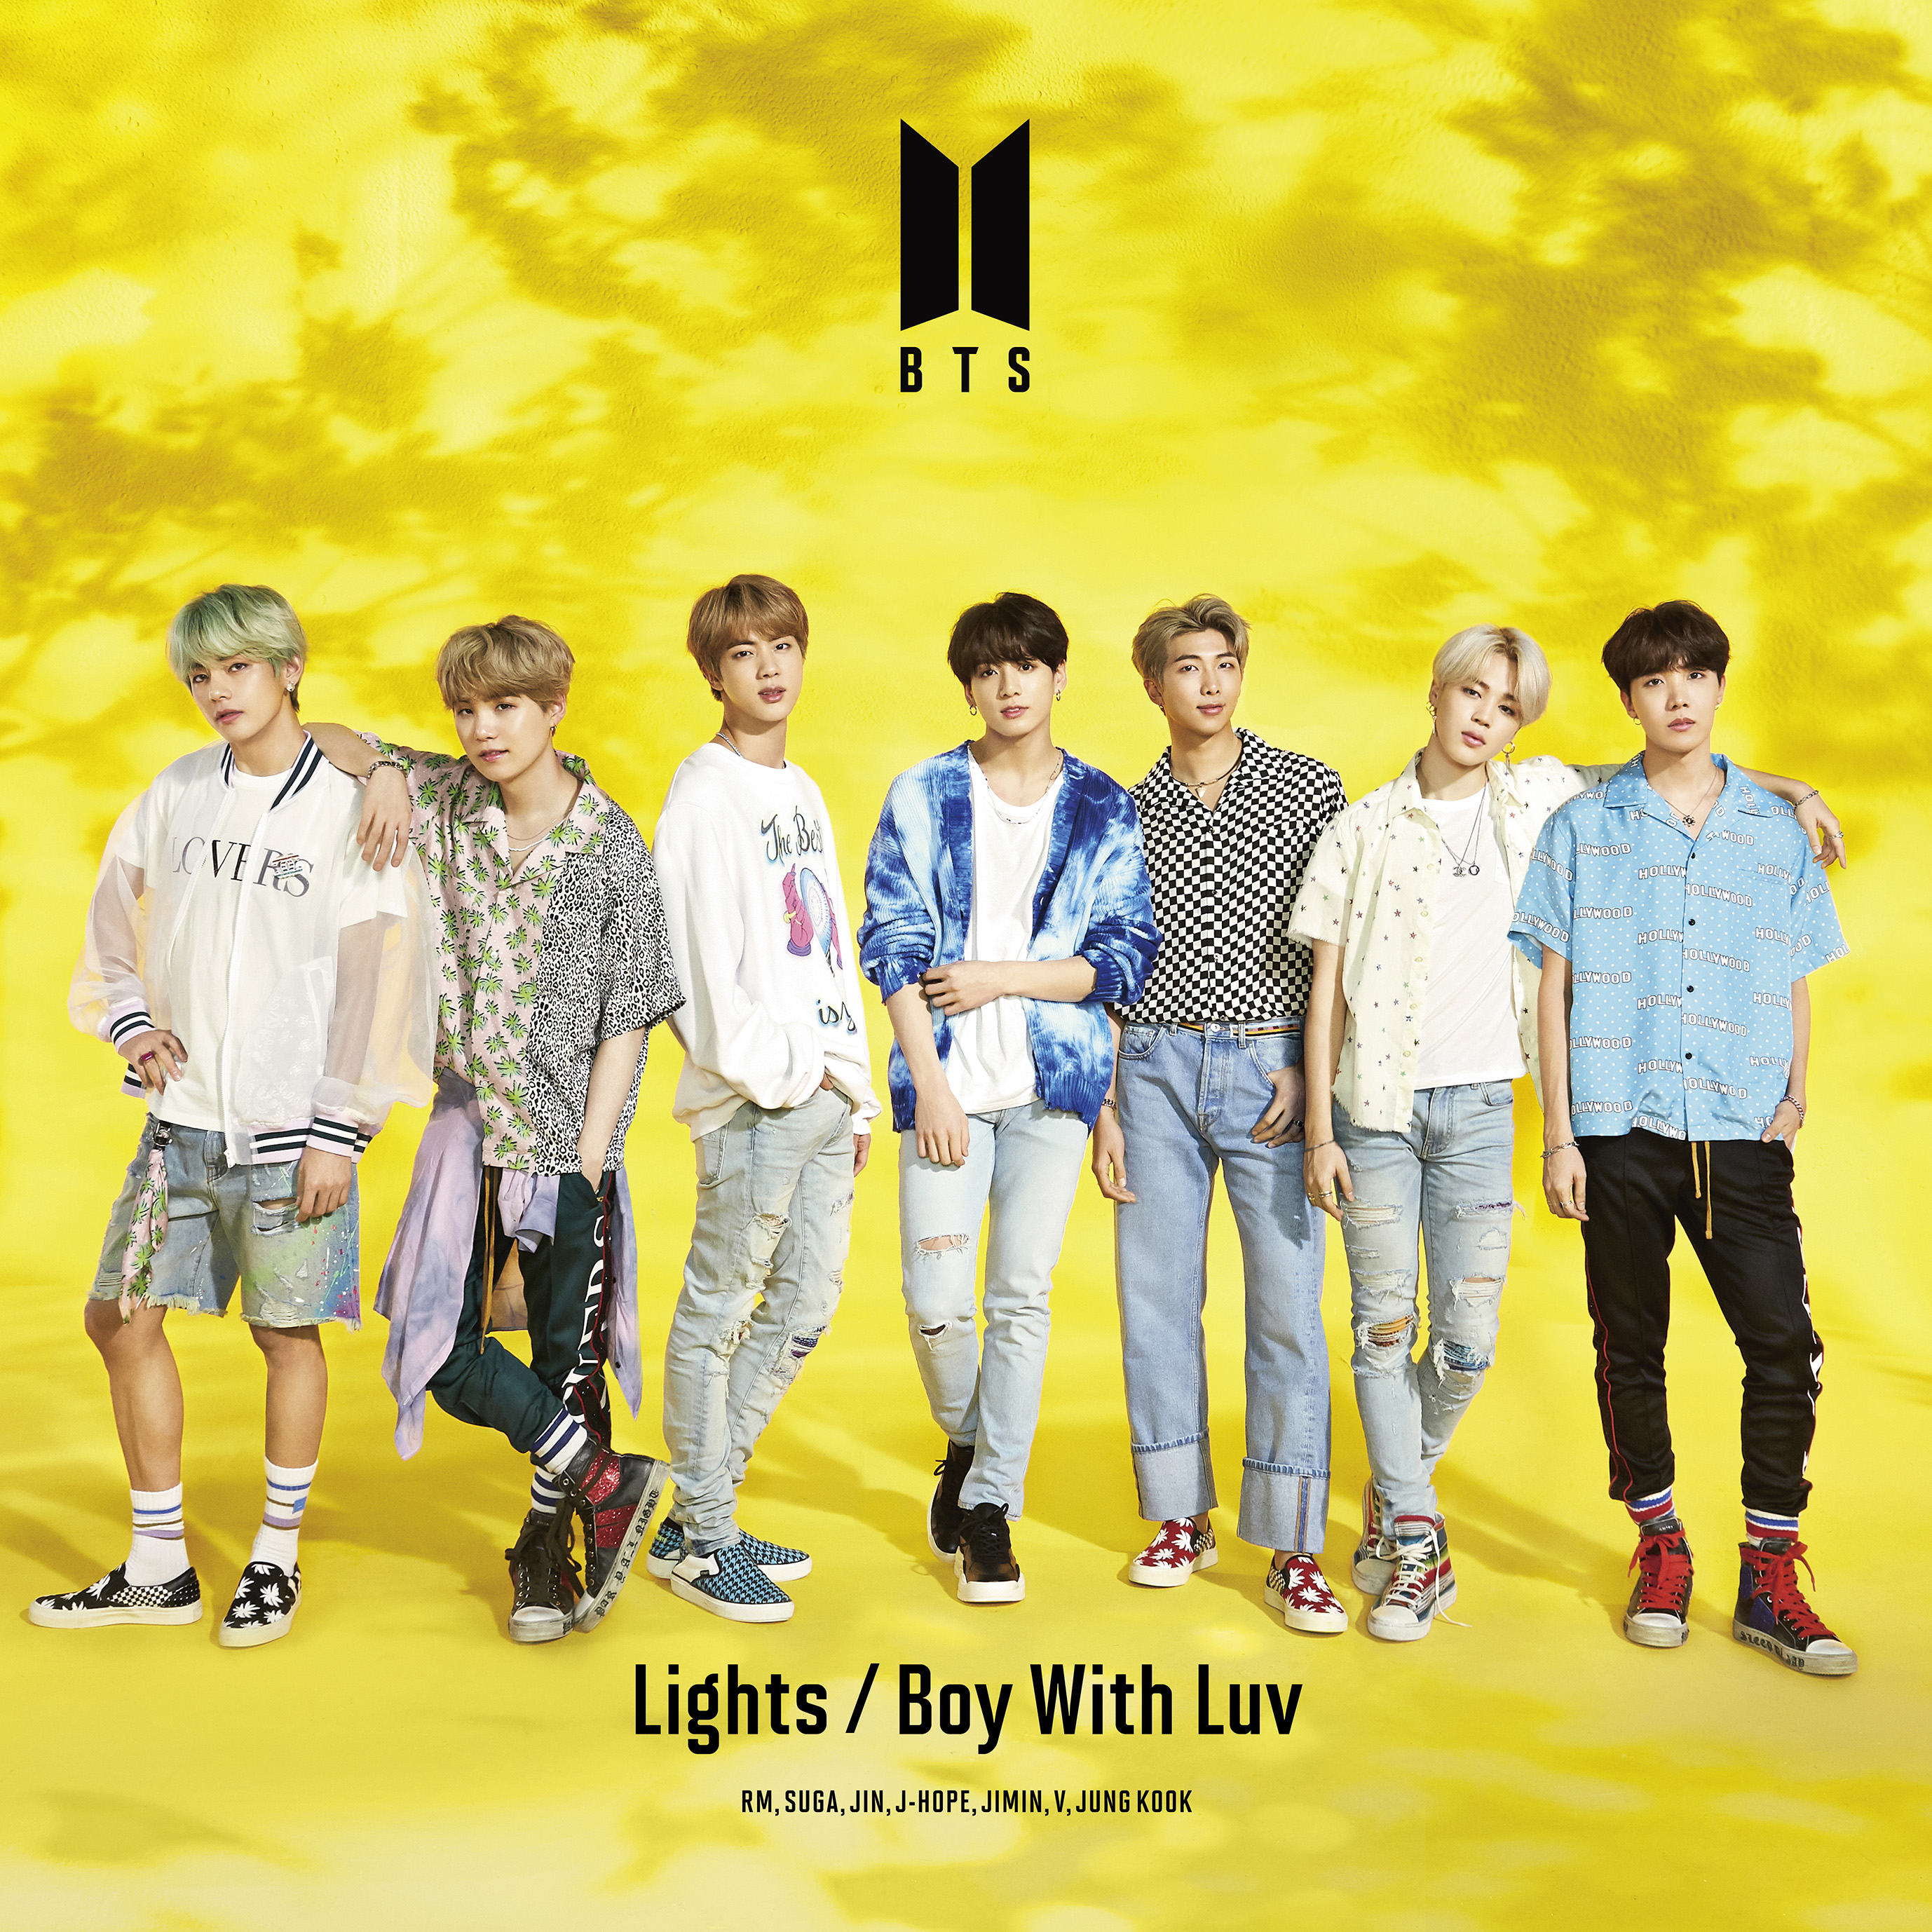 7 3発売 日本10thシングル Lights Boy With Luv 全形態ジャケット写真公開 Bts